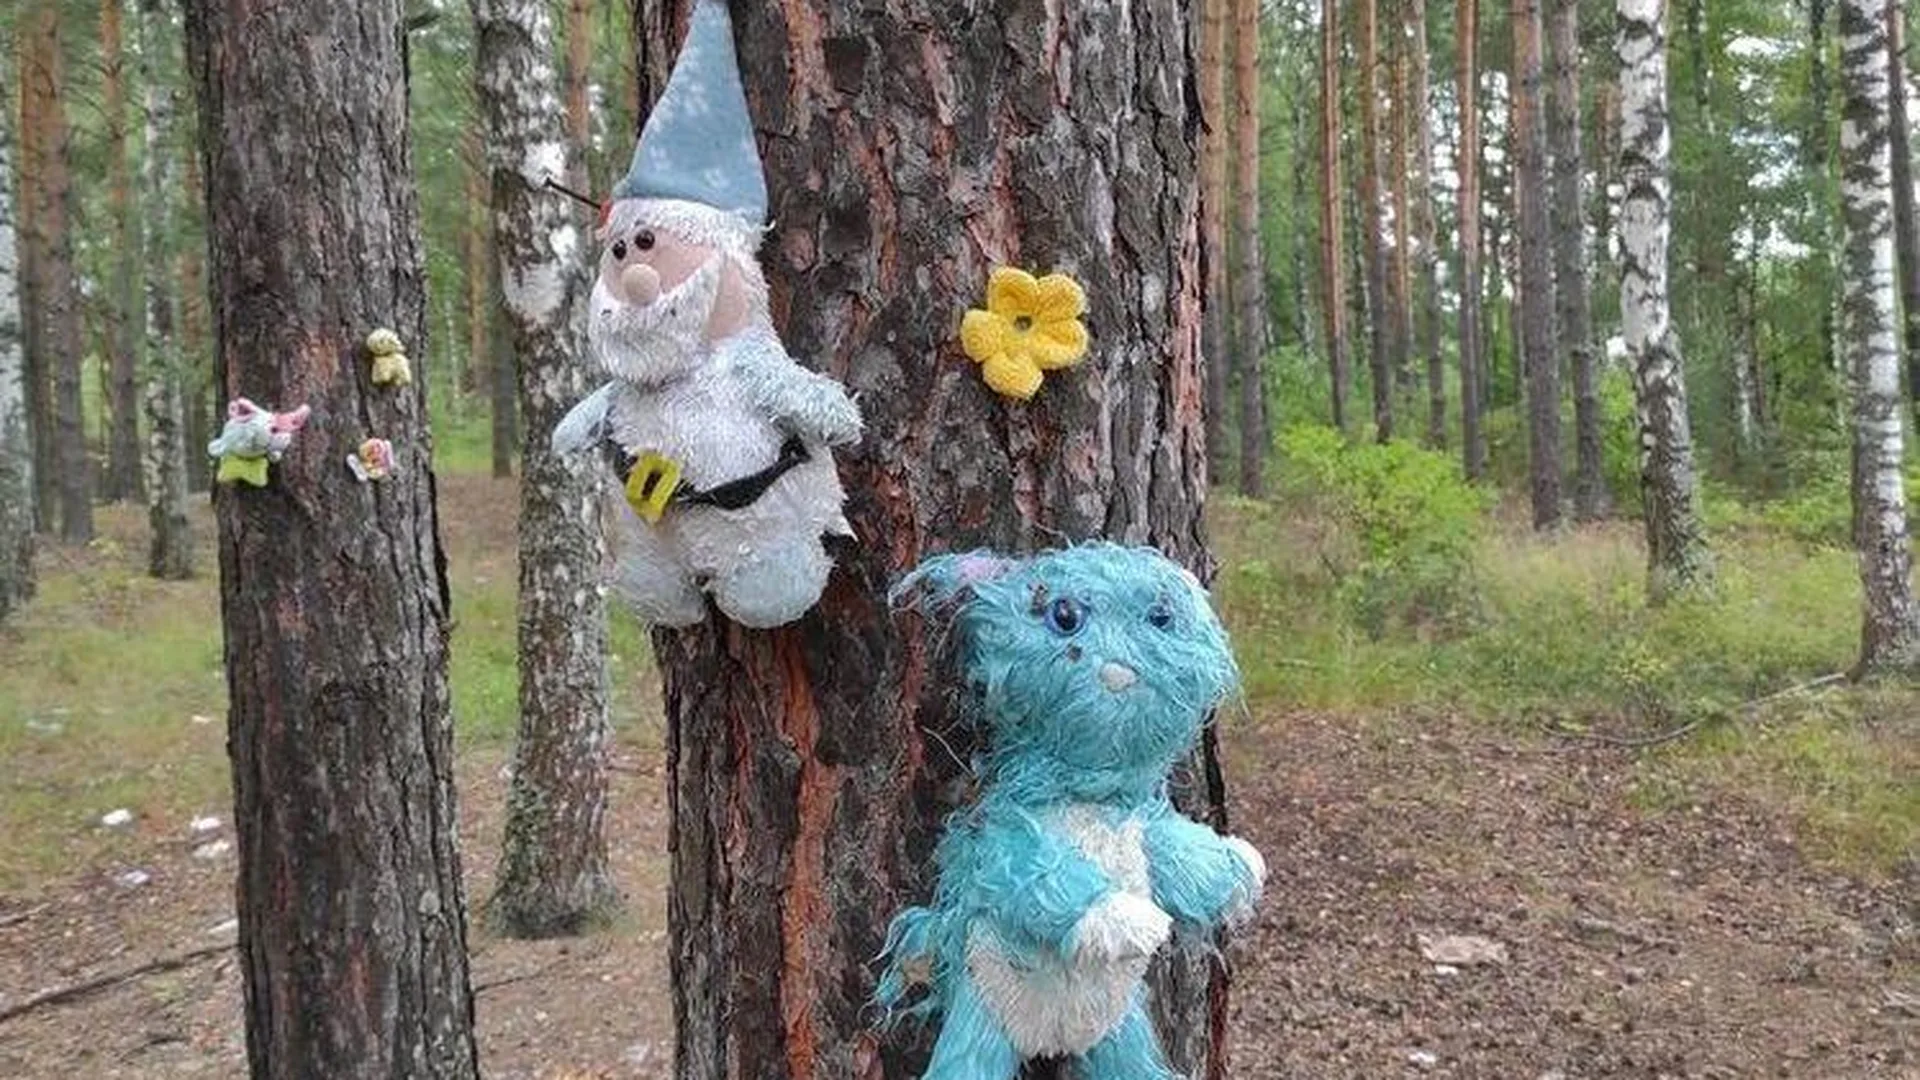 Игрушки, прибитые гвоздями к деревьям в лесу, испугали жителя Орехово-Зуево